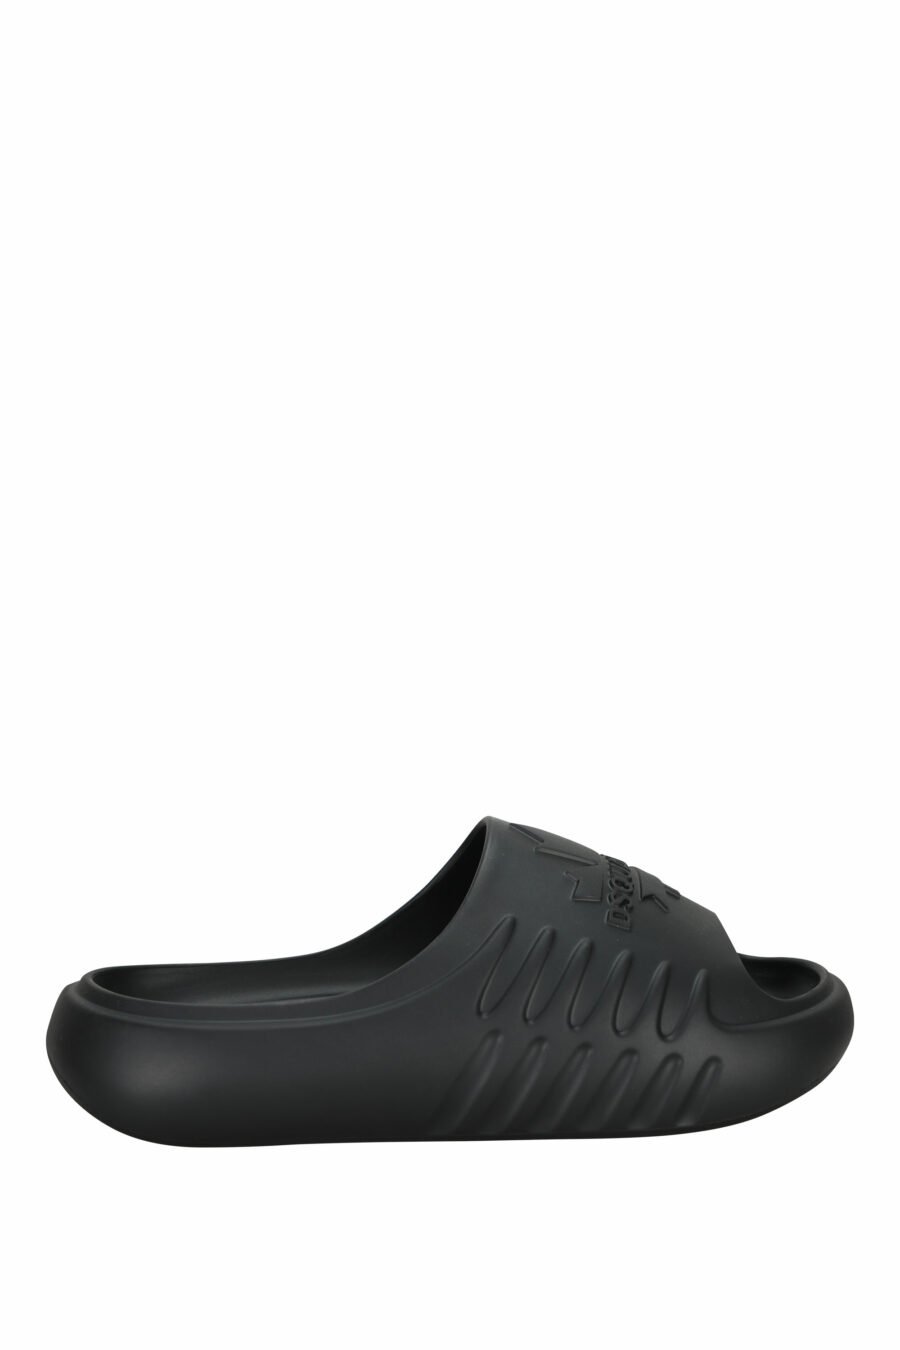 Schwarze Gummi-Flip-Flops mit einfarbigem Logo - 8055777295403